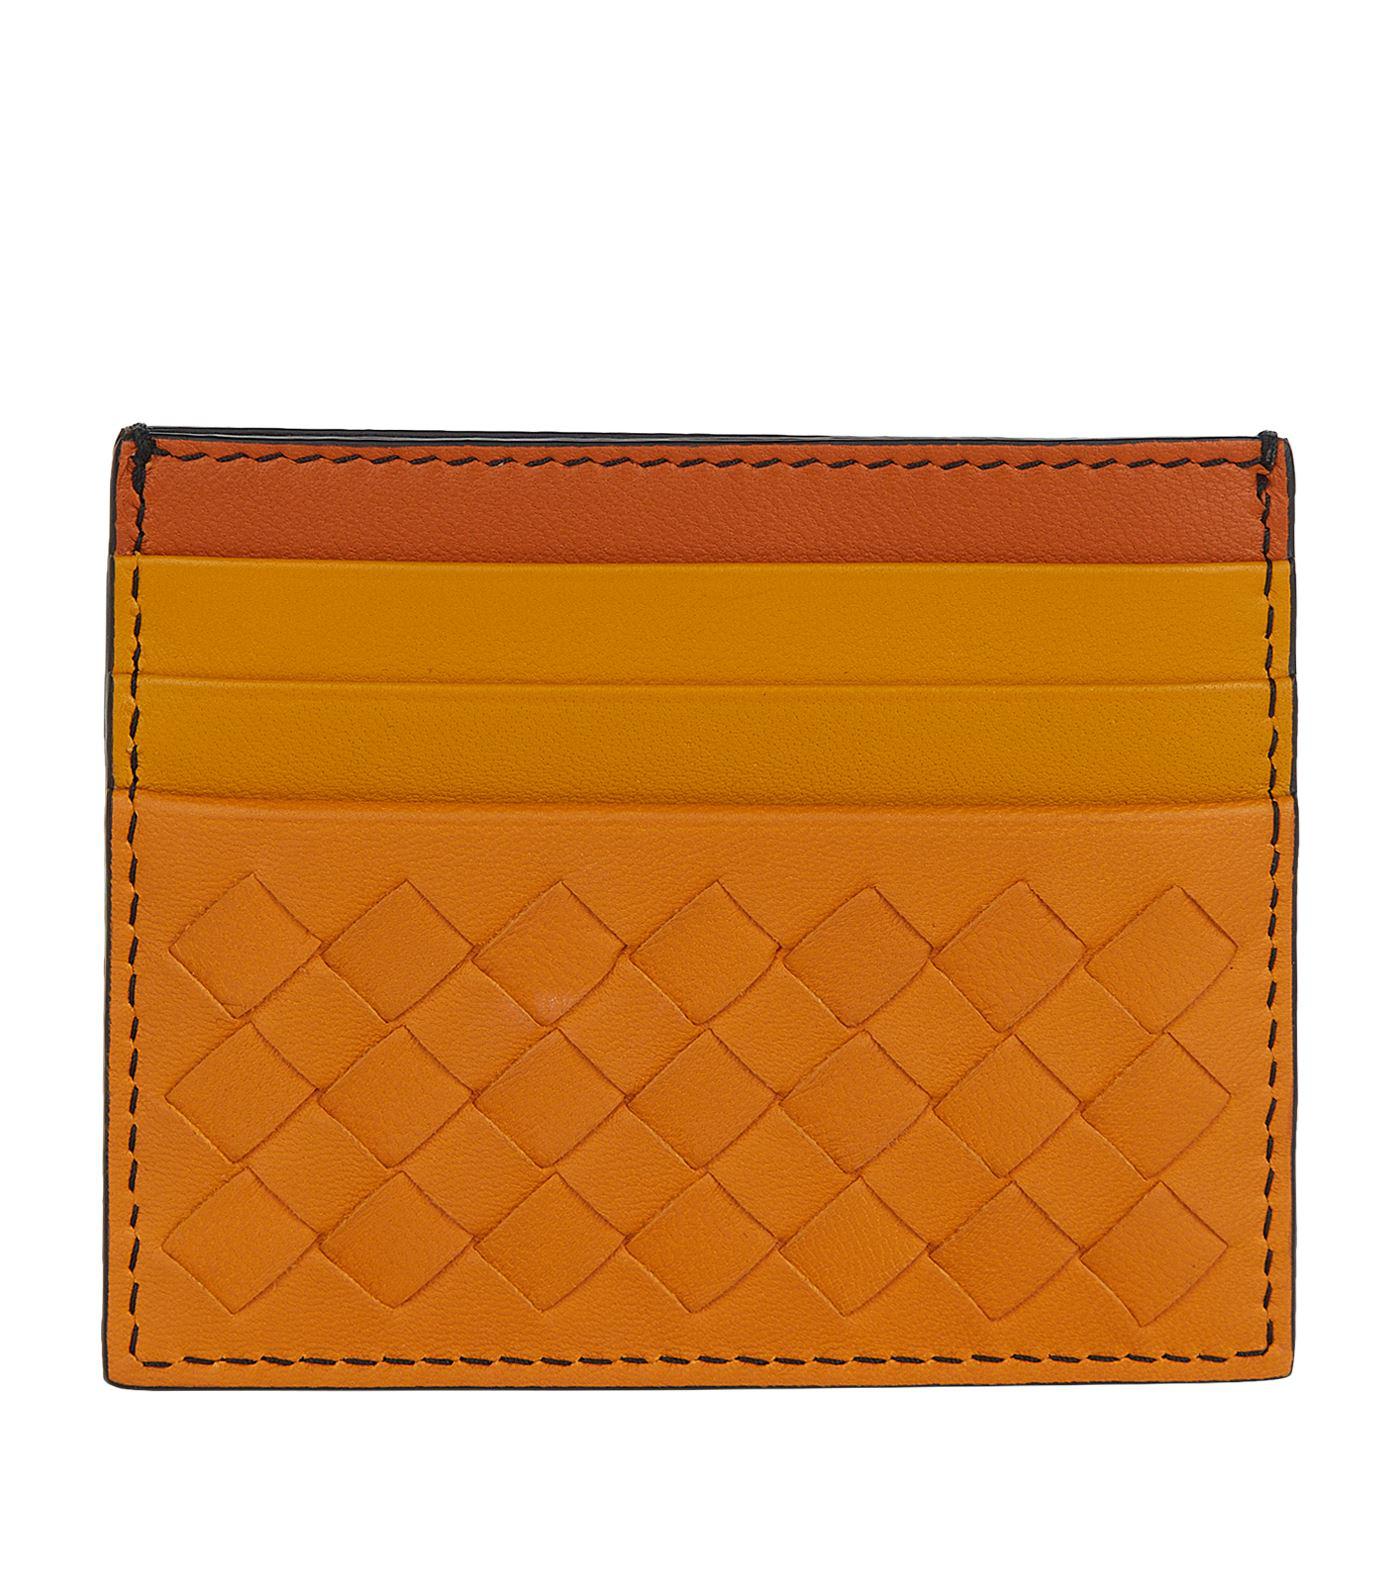 Bottega Veneta Leather Card Case in Orange - Lyst